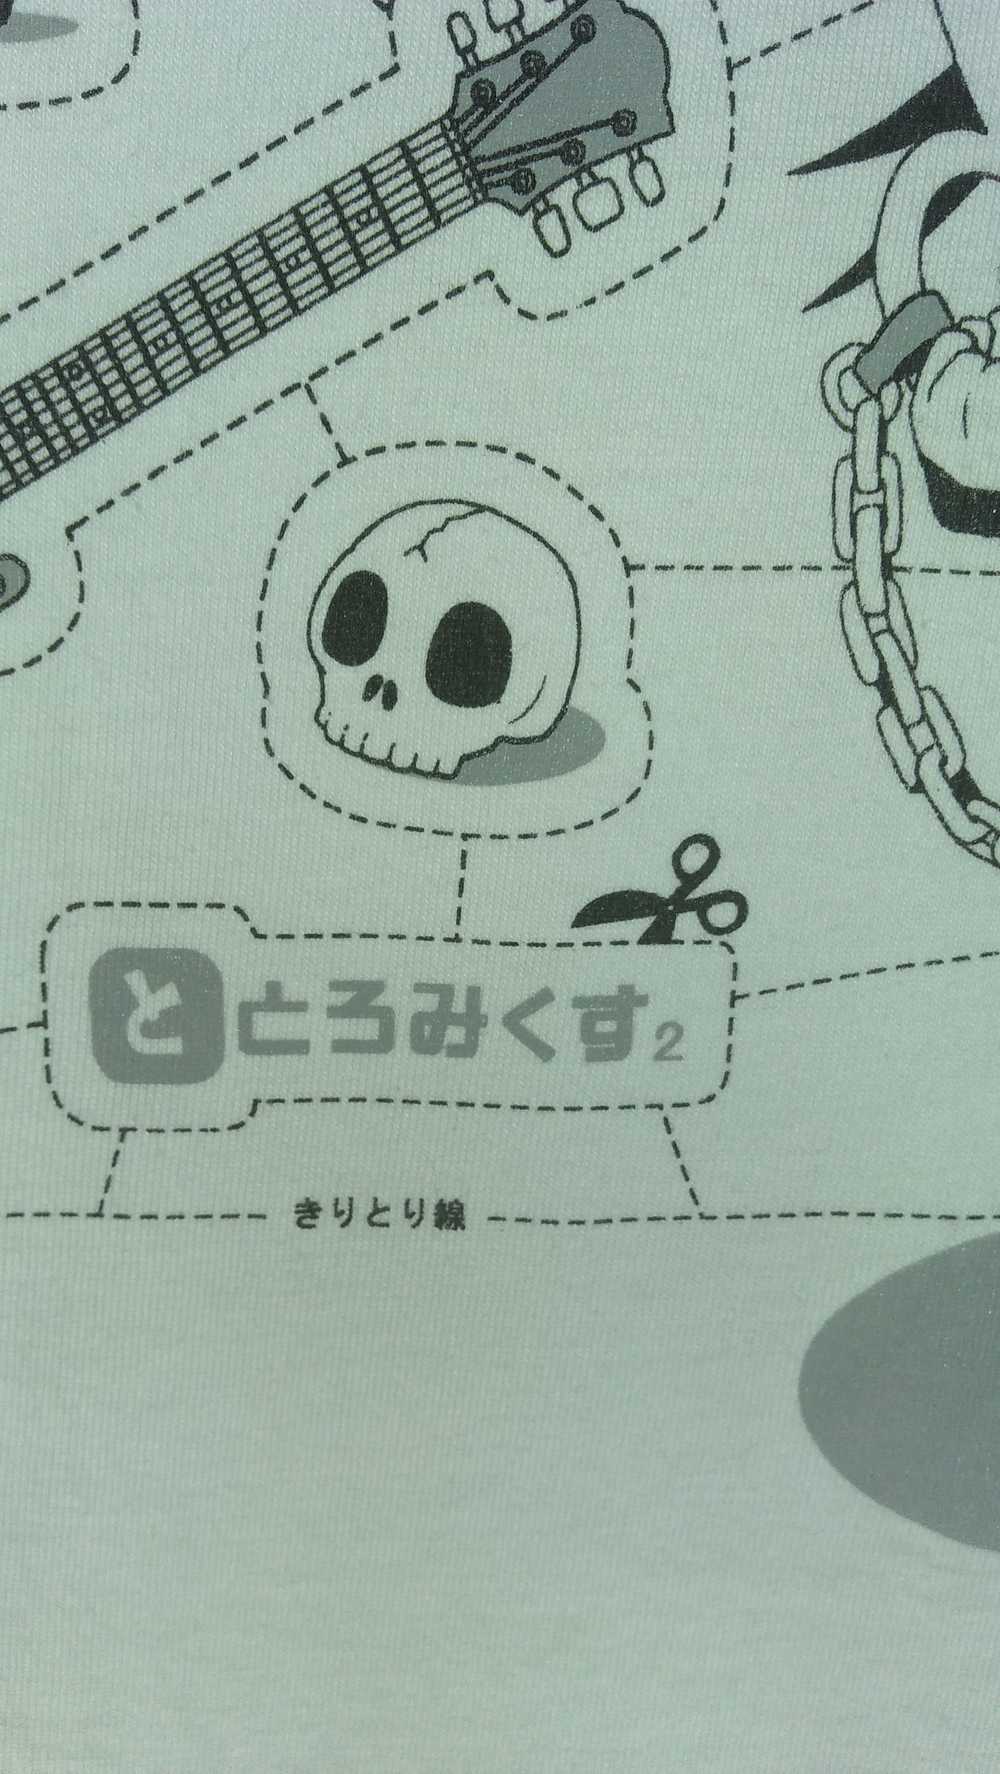 Anima × Cartoon Network × Movie Anime Japan Shirts - image 3